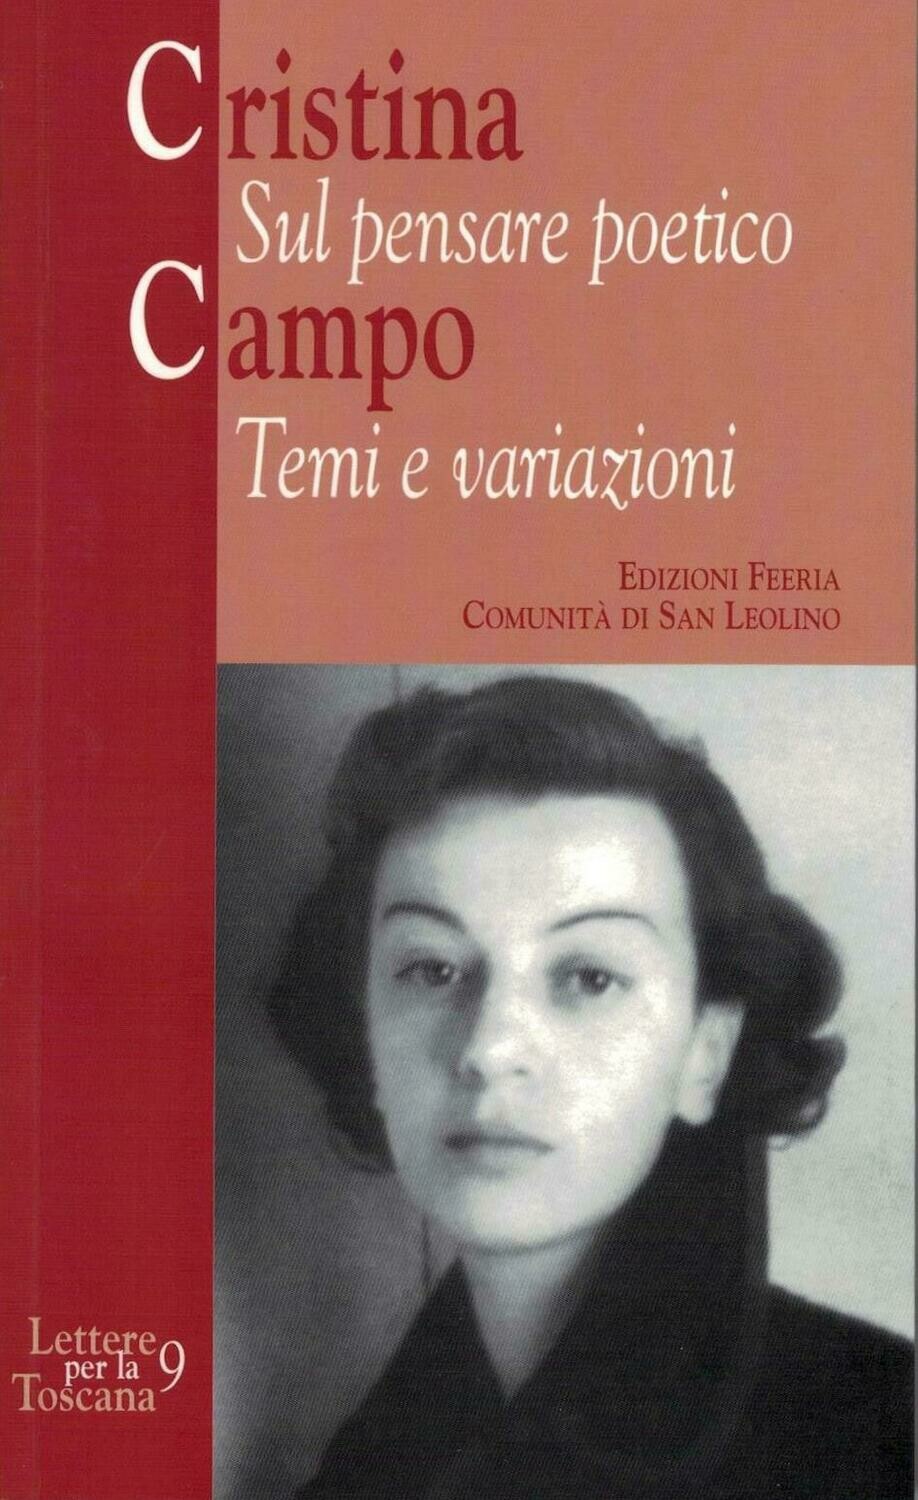 Cristina Campo - Sul pensare poetico Temi e variazioni (Autori vari)